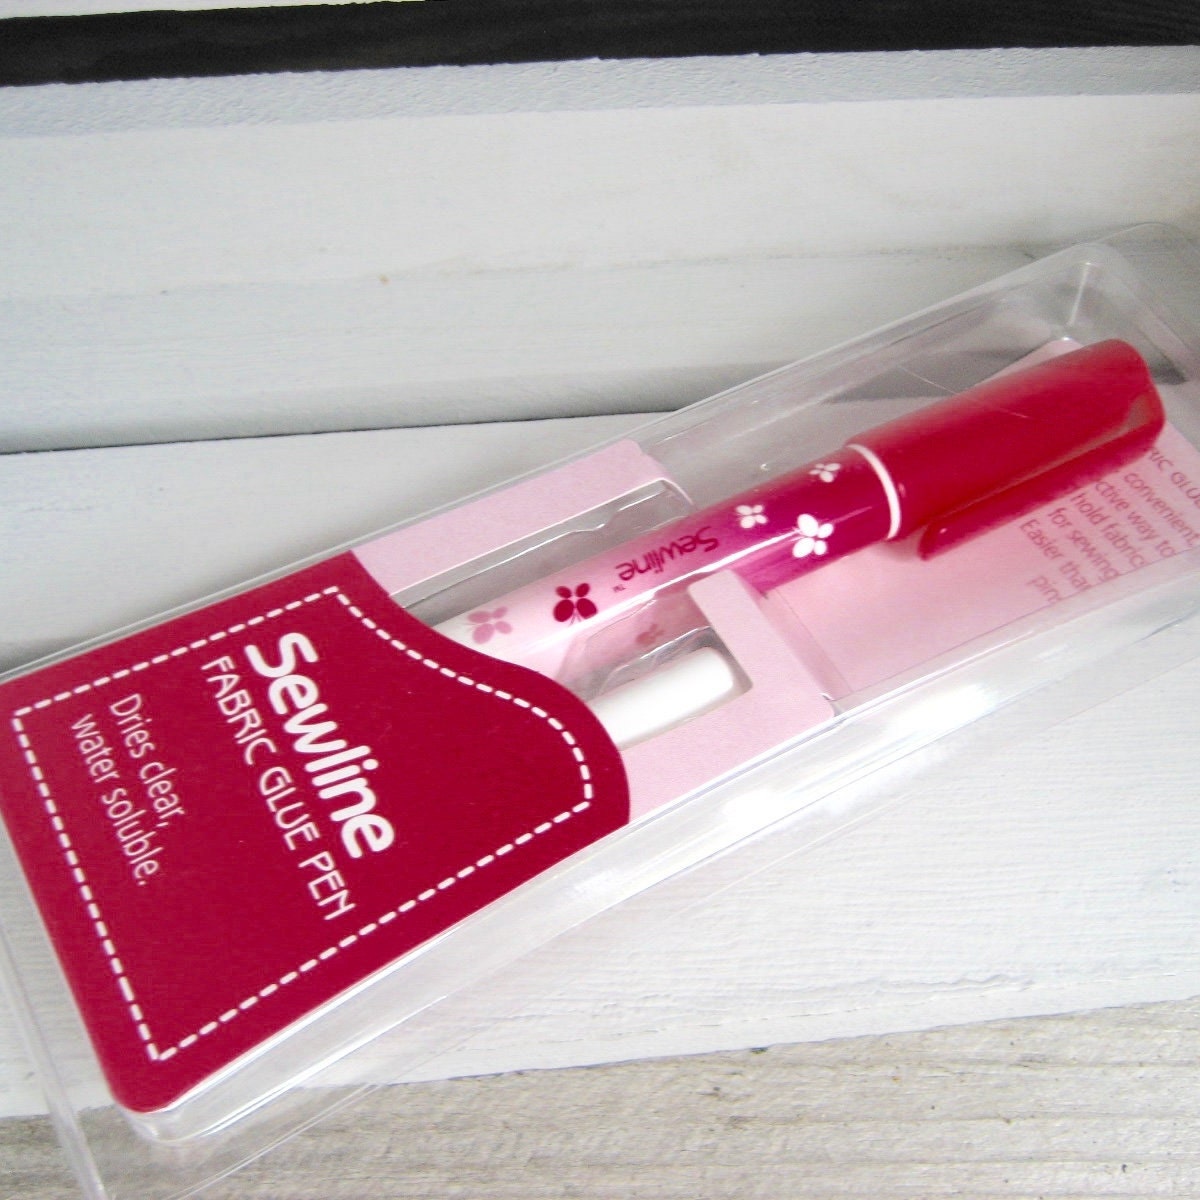 Sewline Glue Pen FAB50012